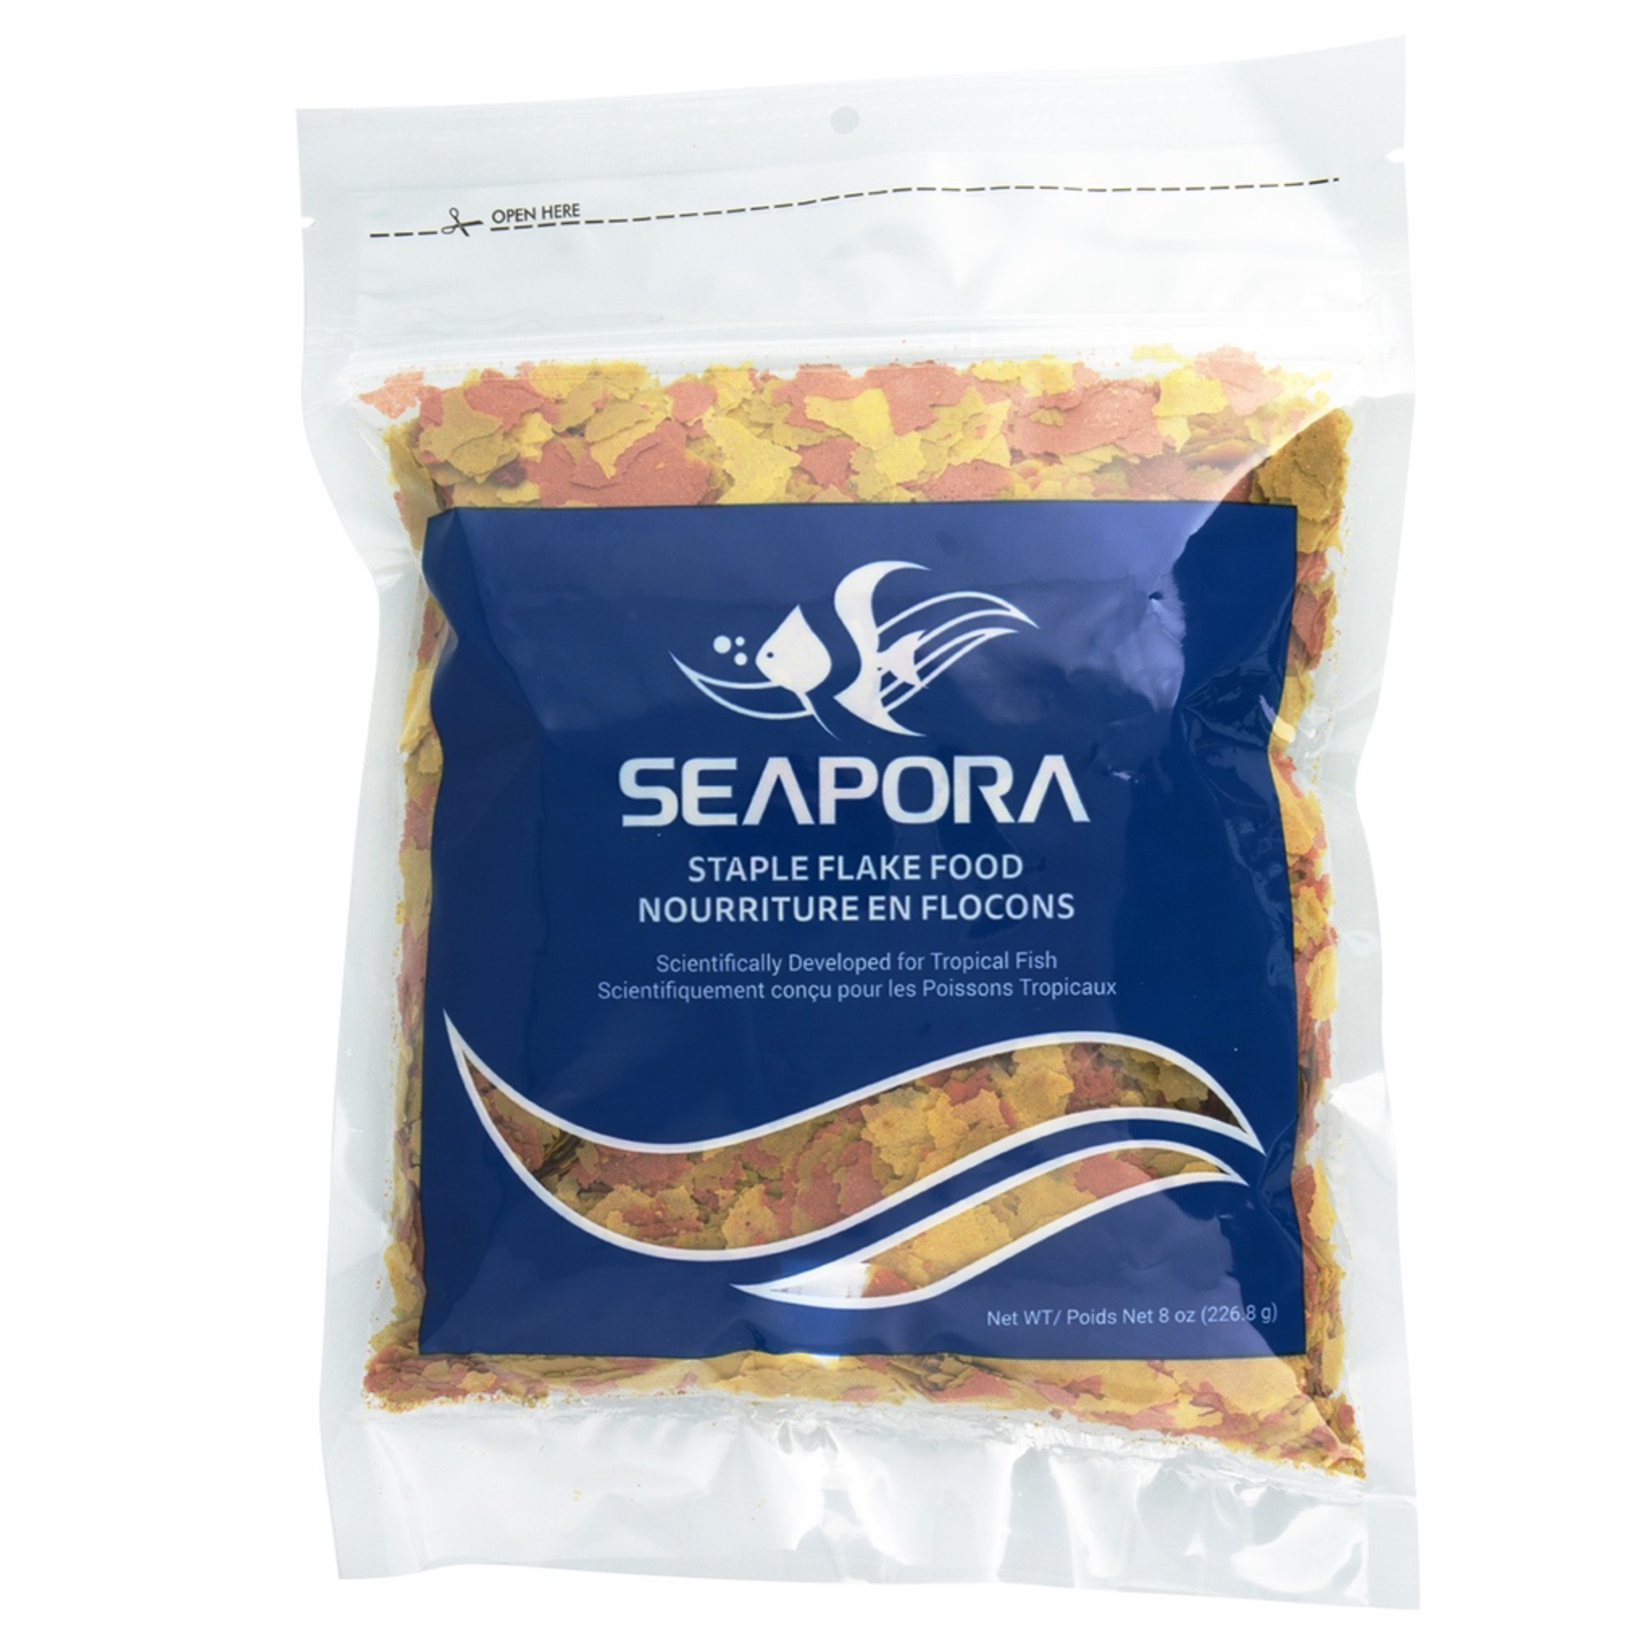 SEAPORA (W) Seapora Staple Flake Food - 8 oz